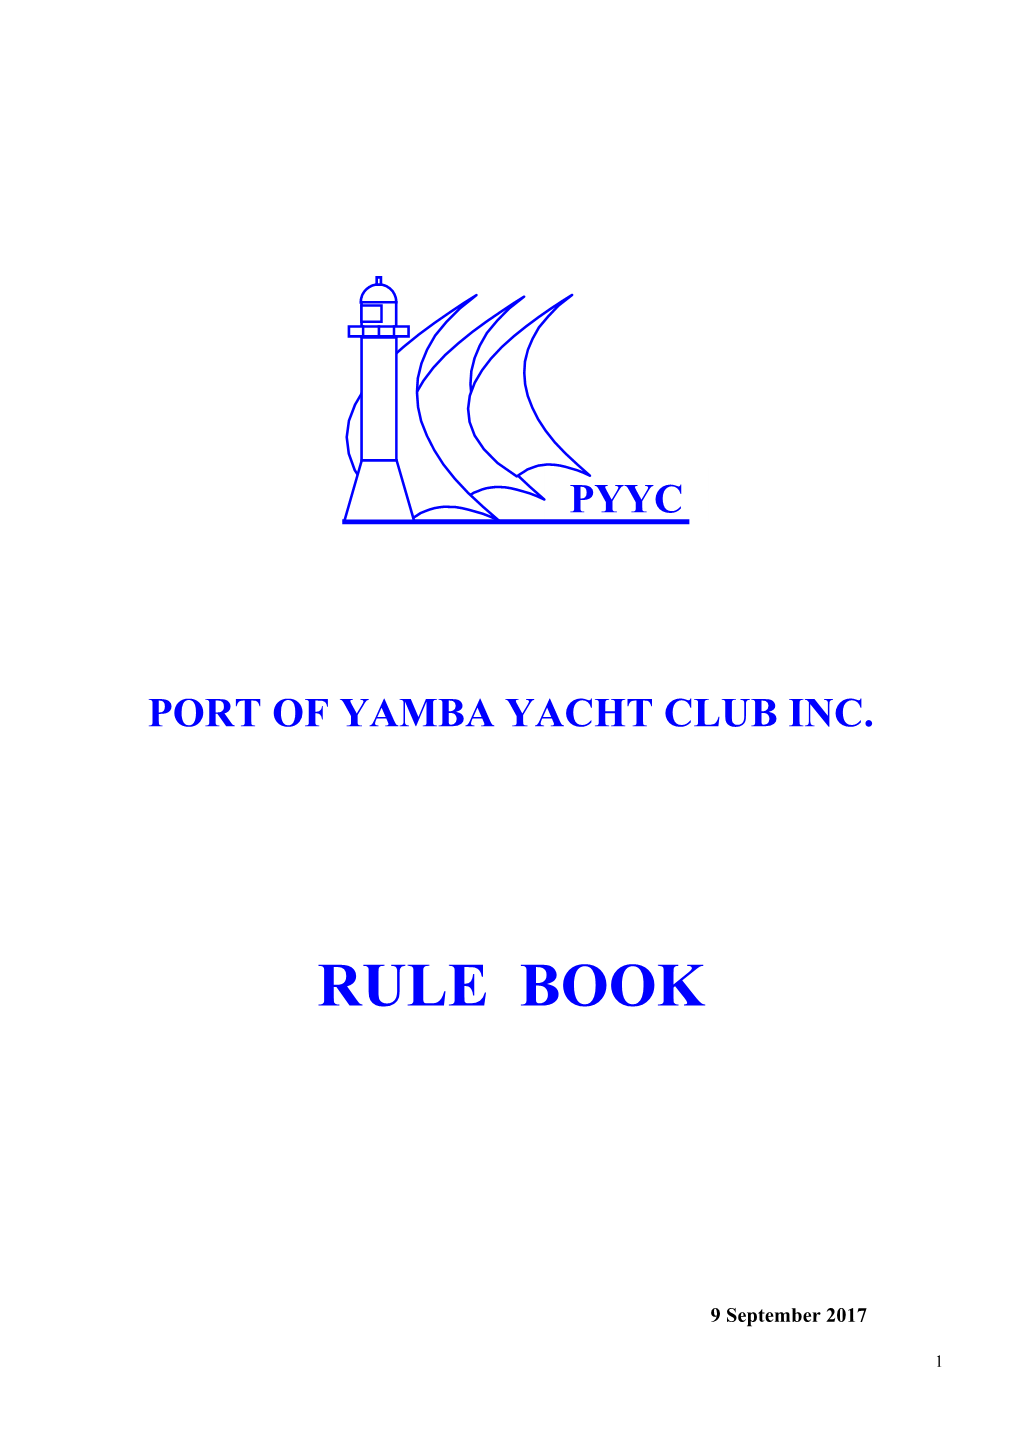 Port of Yamba Yacht Club Inc